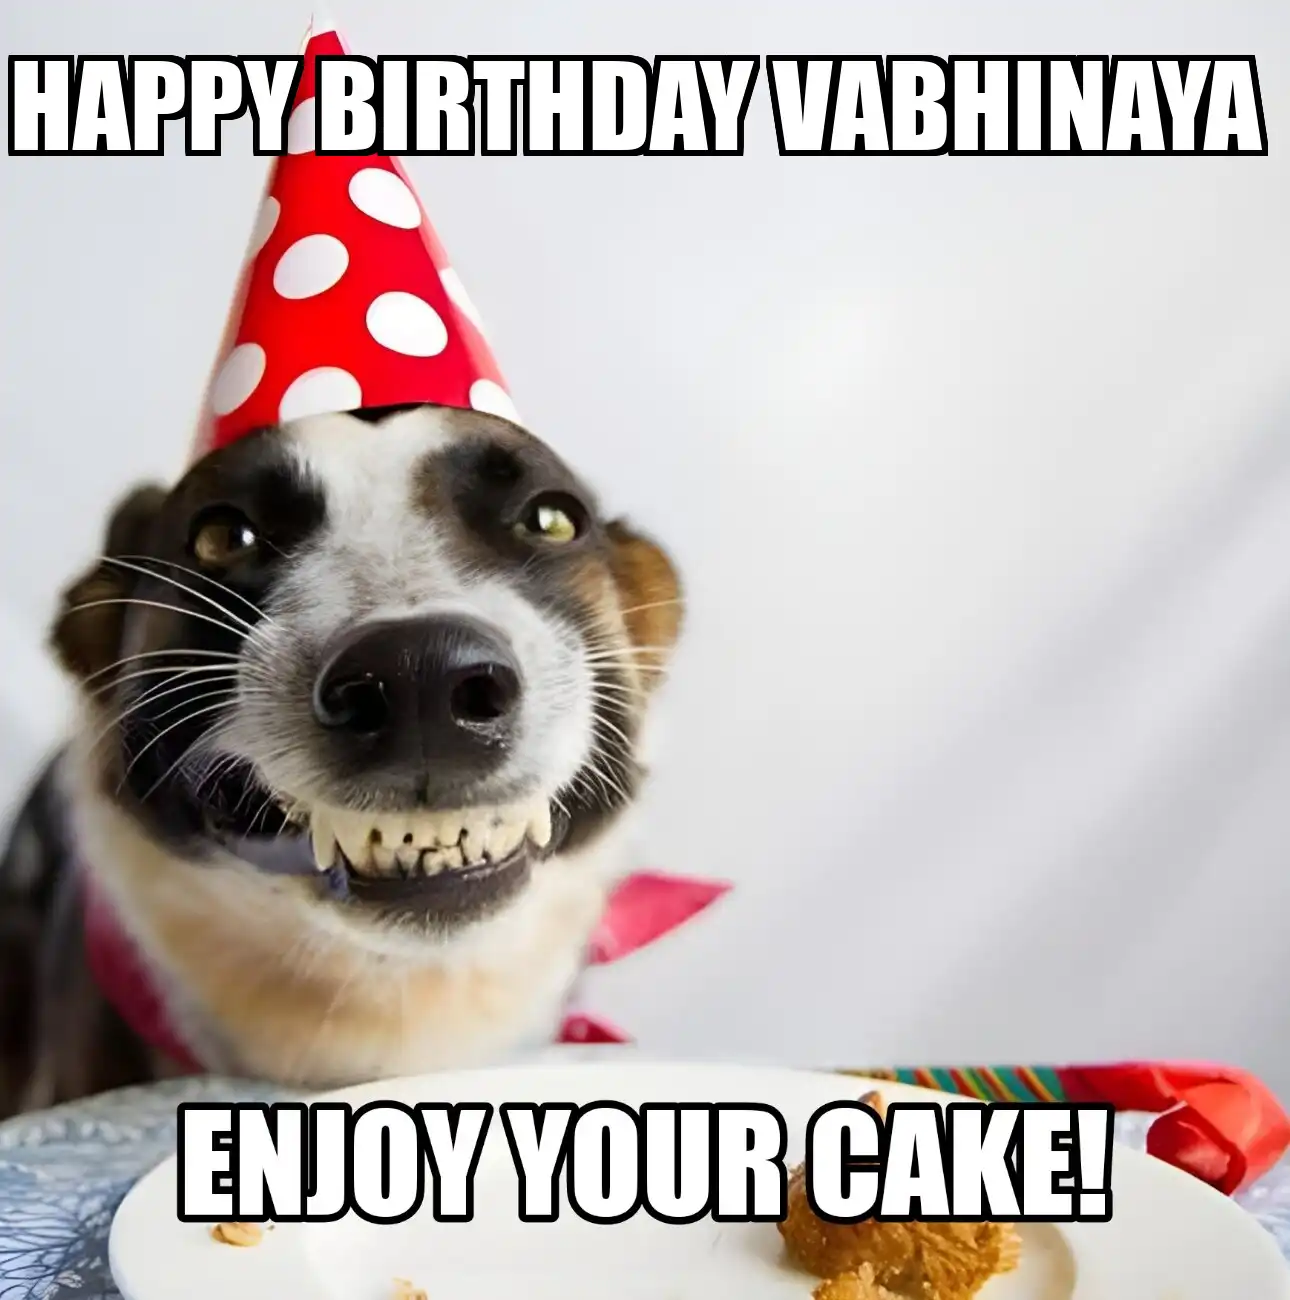 Happy Birthday Vabhinaya Enjoy Your Cake Dog Meme